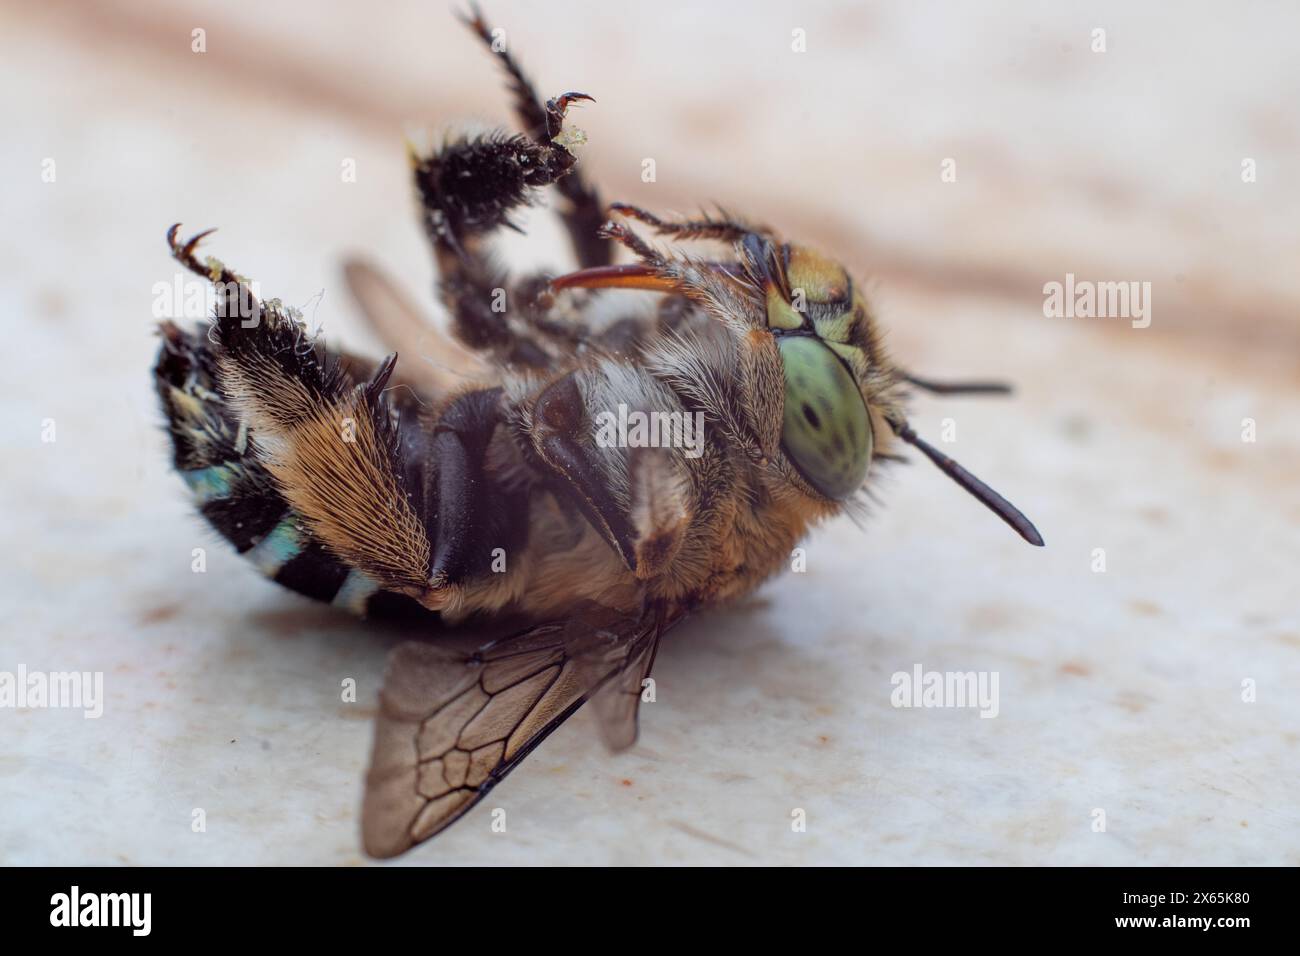 Blaubändige Bienen oder Baggerbienen, eine Art von im Allgemeinen mittelgroßen bis sehr großen Bienen, die zur Gattung Amegilla gehören, kopfüber fotografiert. Stockfoto